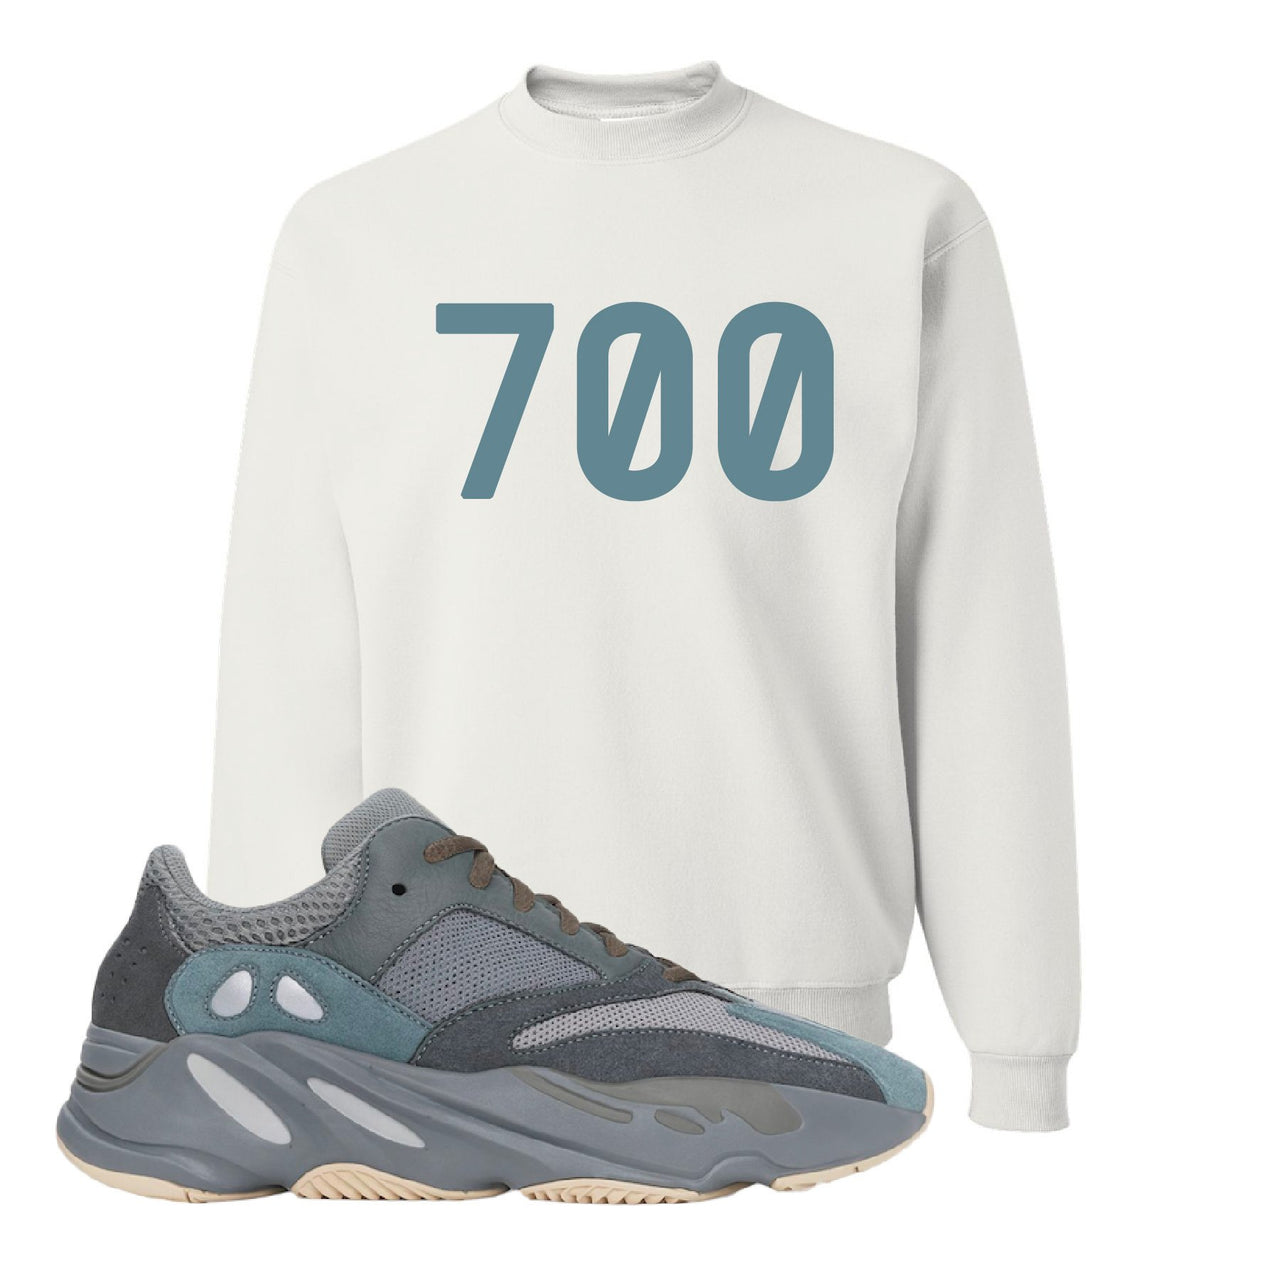 Yeezy Boost 700 Teal Blue 700 White Sneaker Hook Up Crewneck Sweatshirt